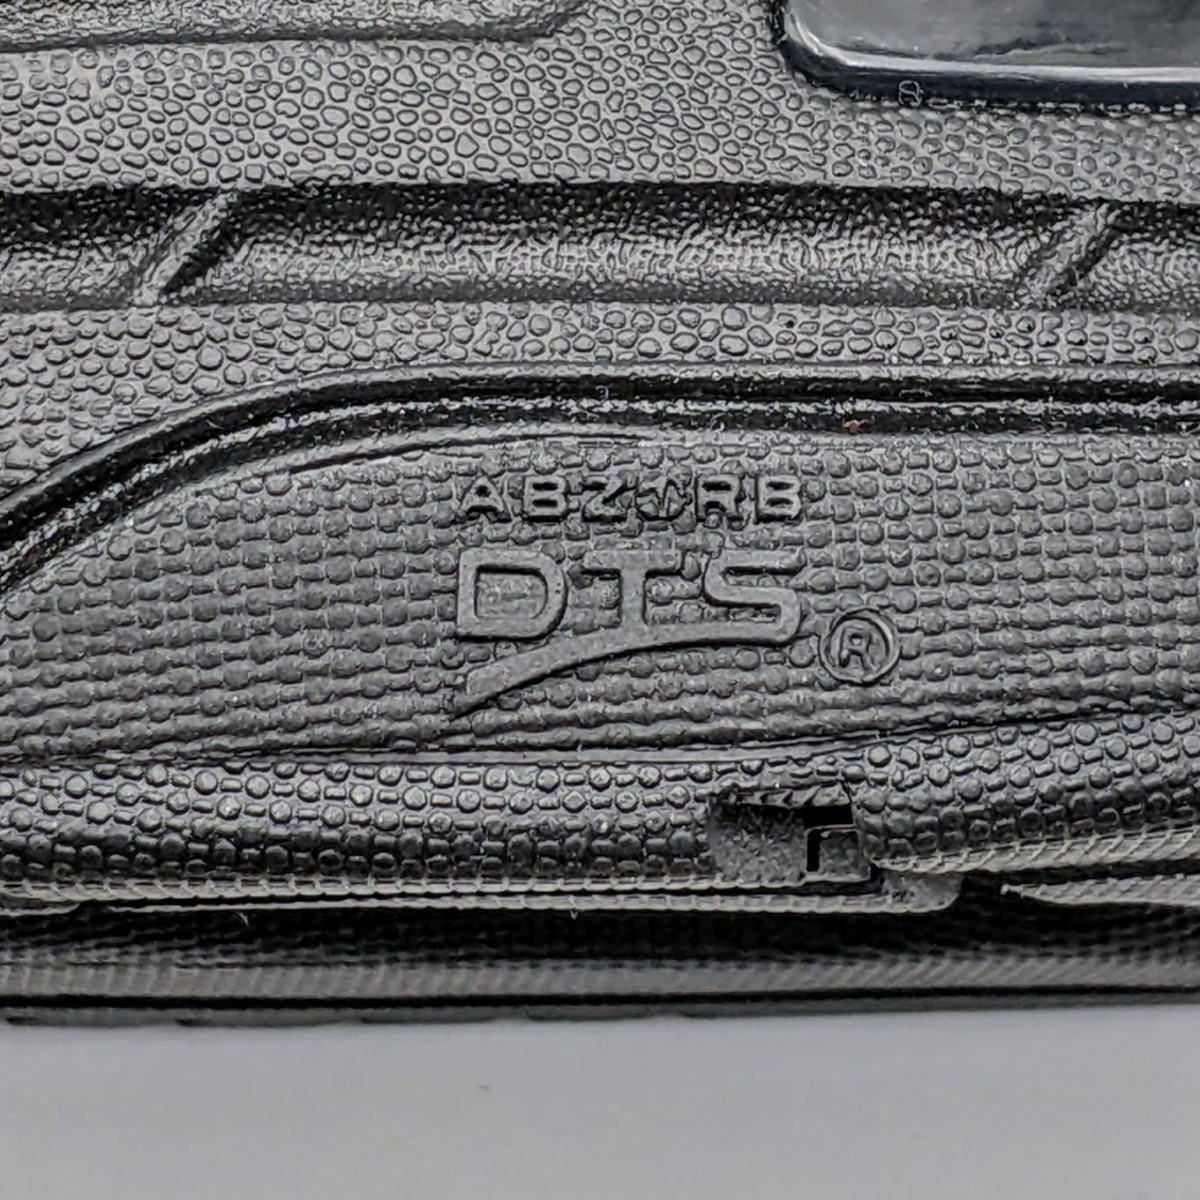 ニューバランス MR993TB 27.5cm ワイズ:D New Balance メンズ スニーカー 黒/ブラック/BLACK スエード Made in USA_画像10